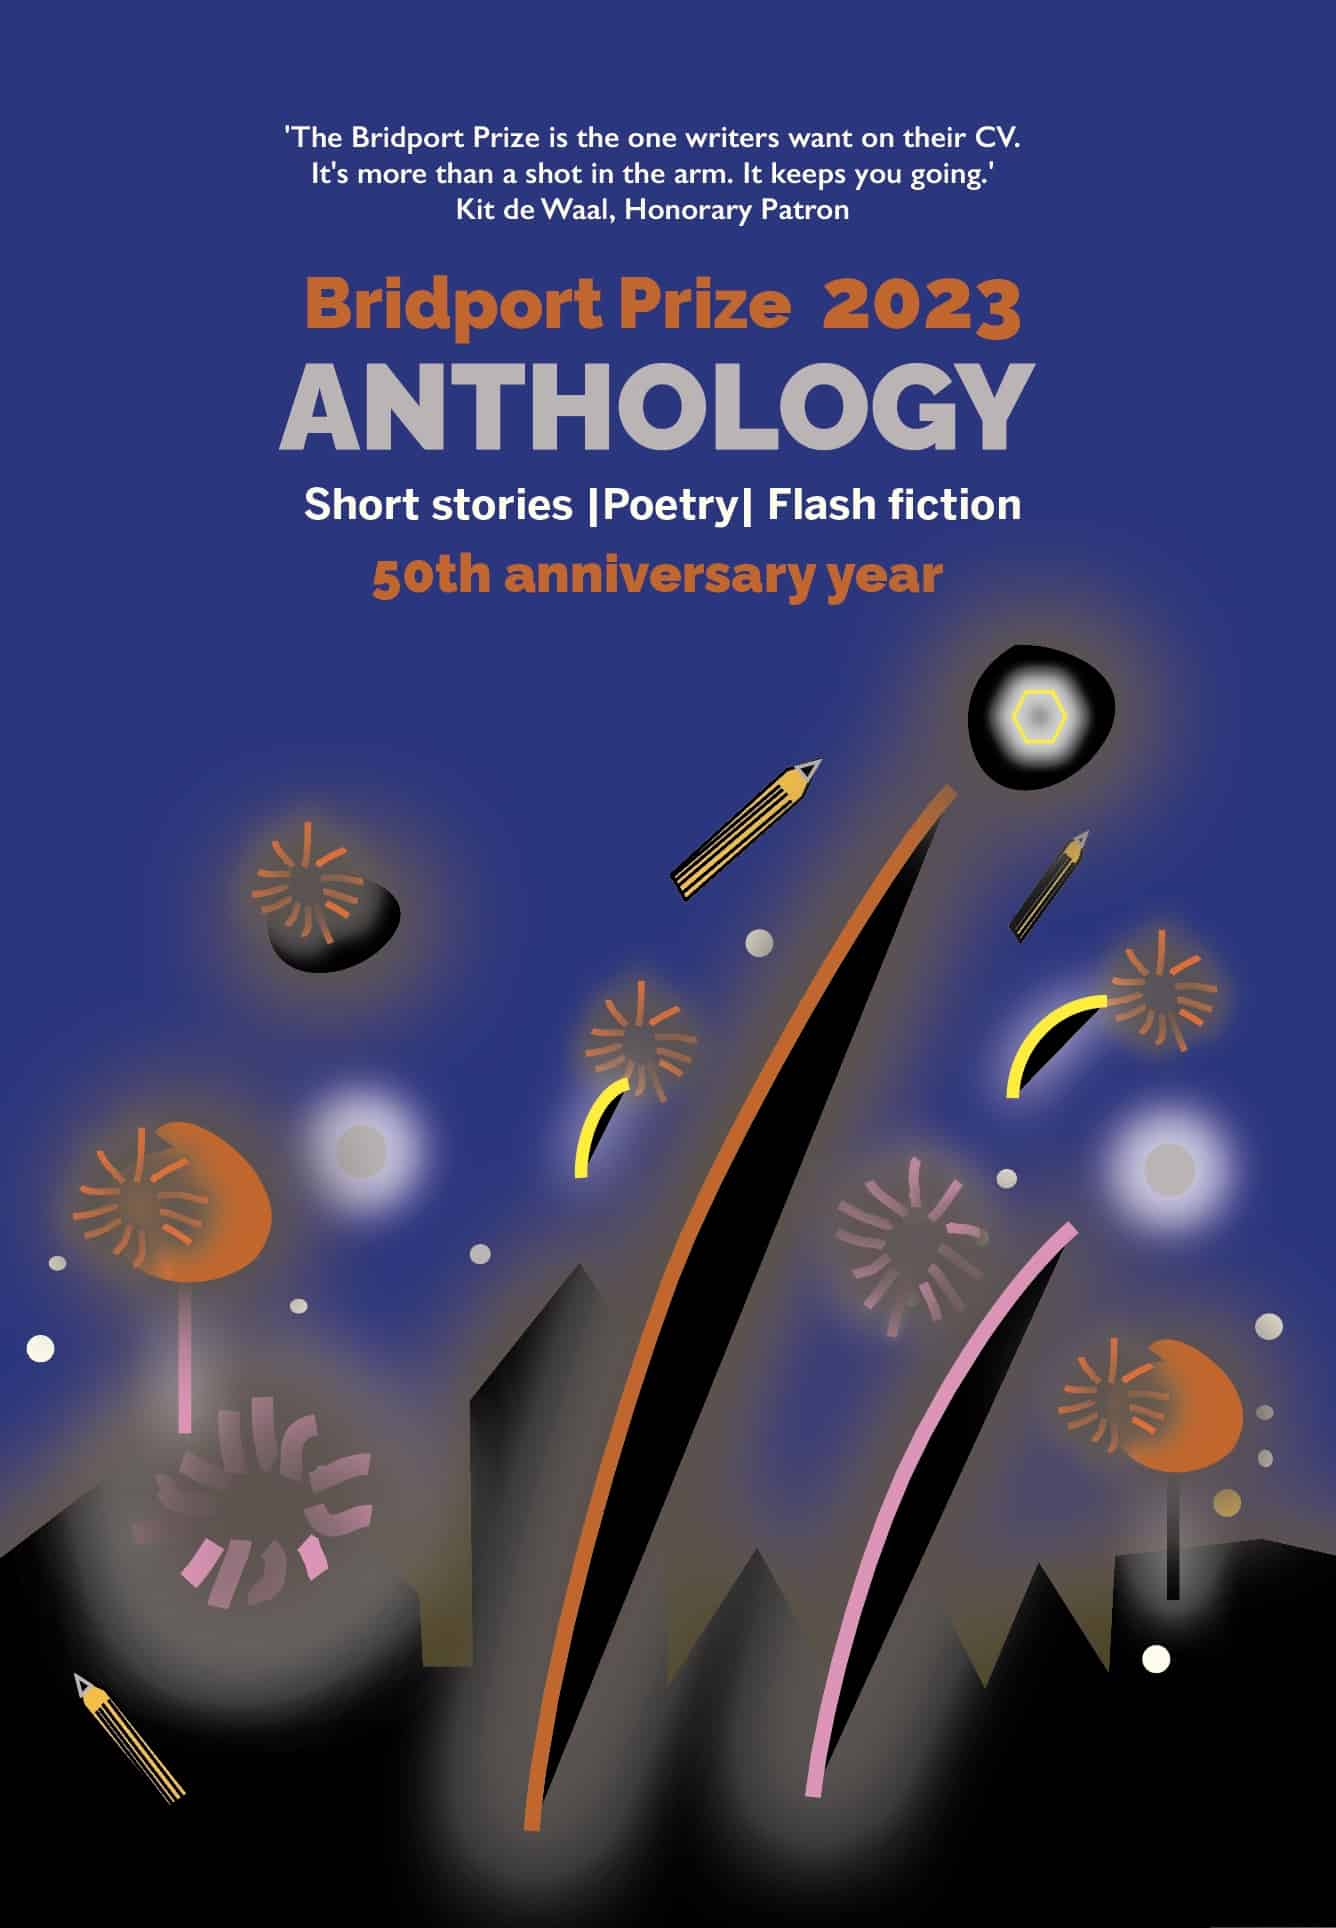 The Bridport Prize Anthology 2023